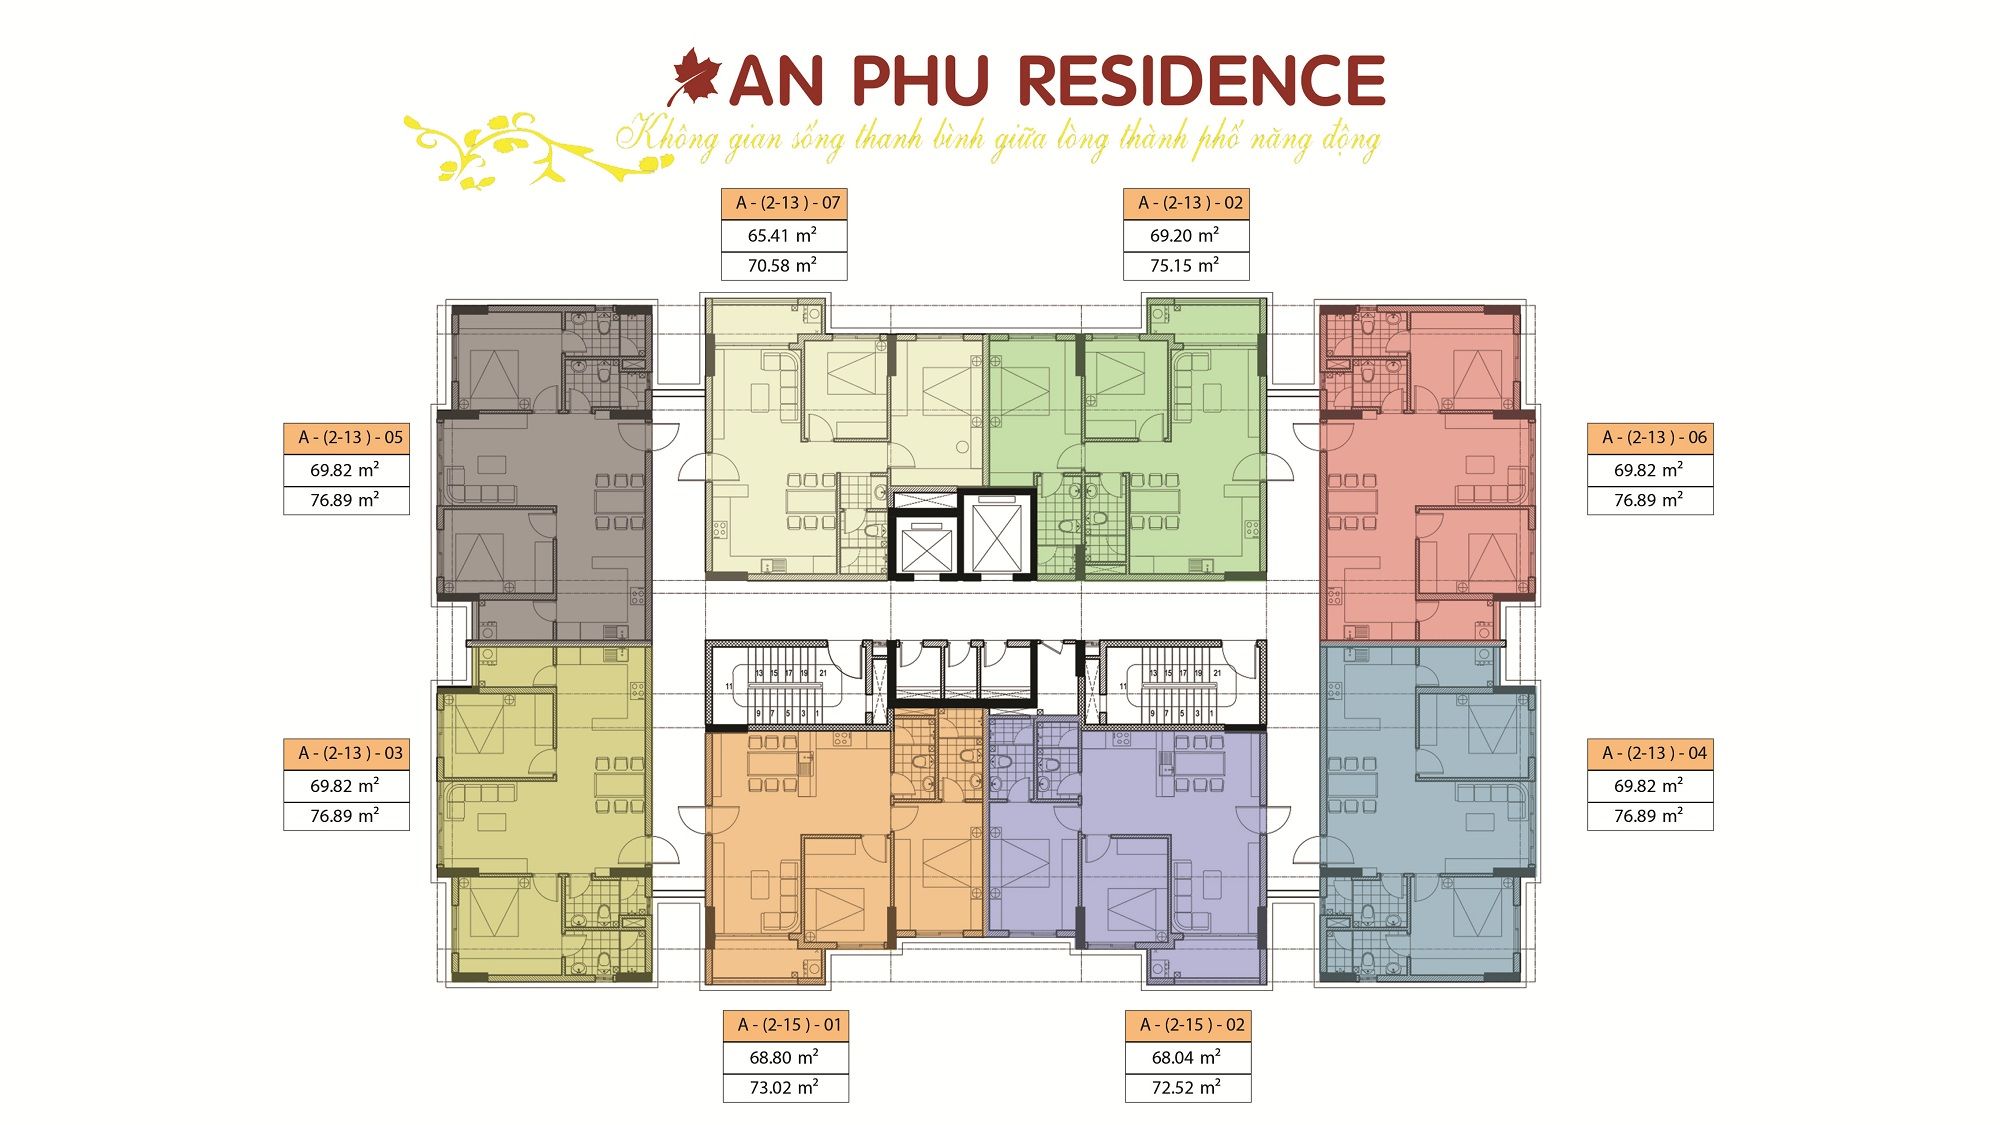 Mẫu thiết kế của dự án An Phú Residence